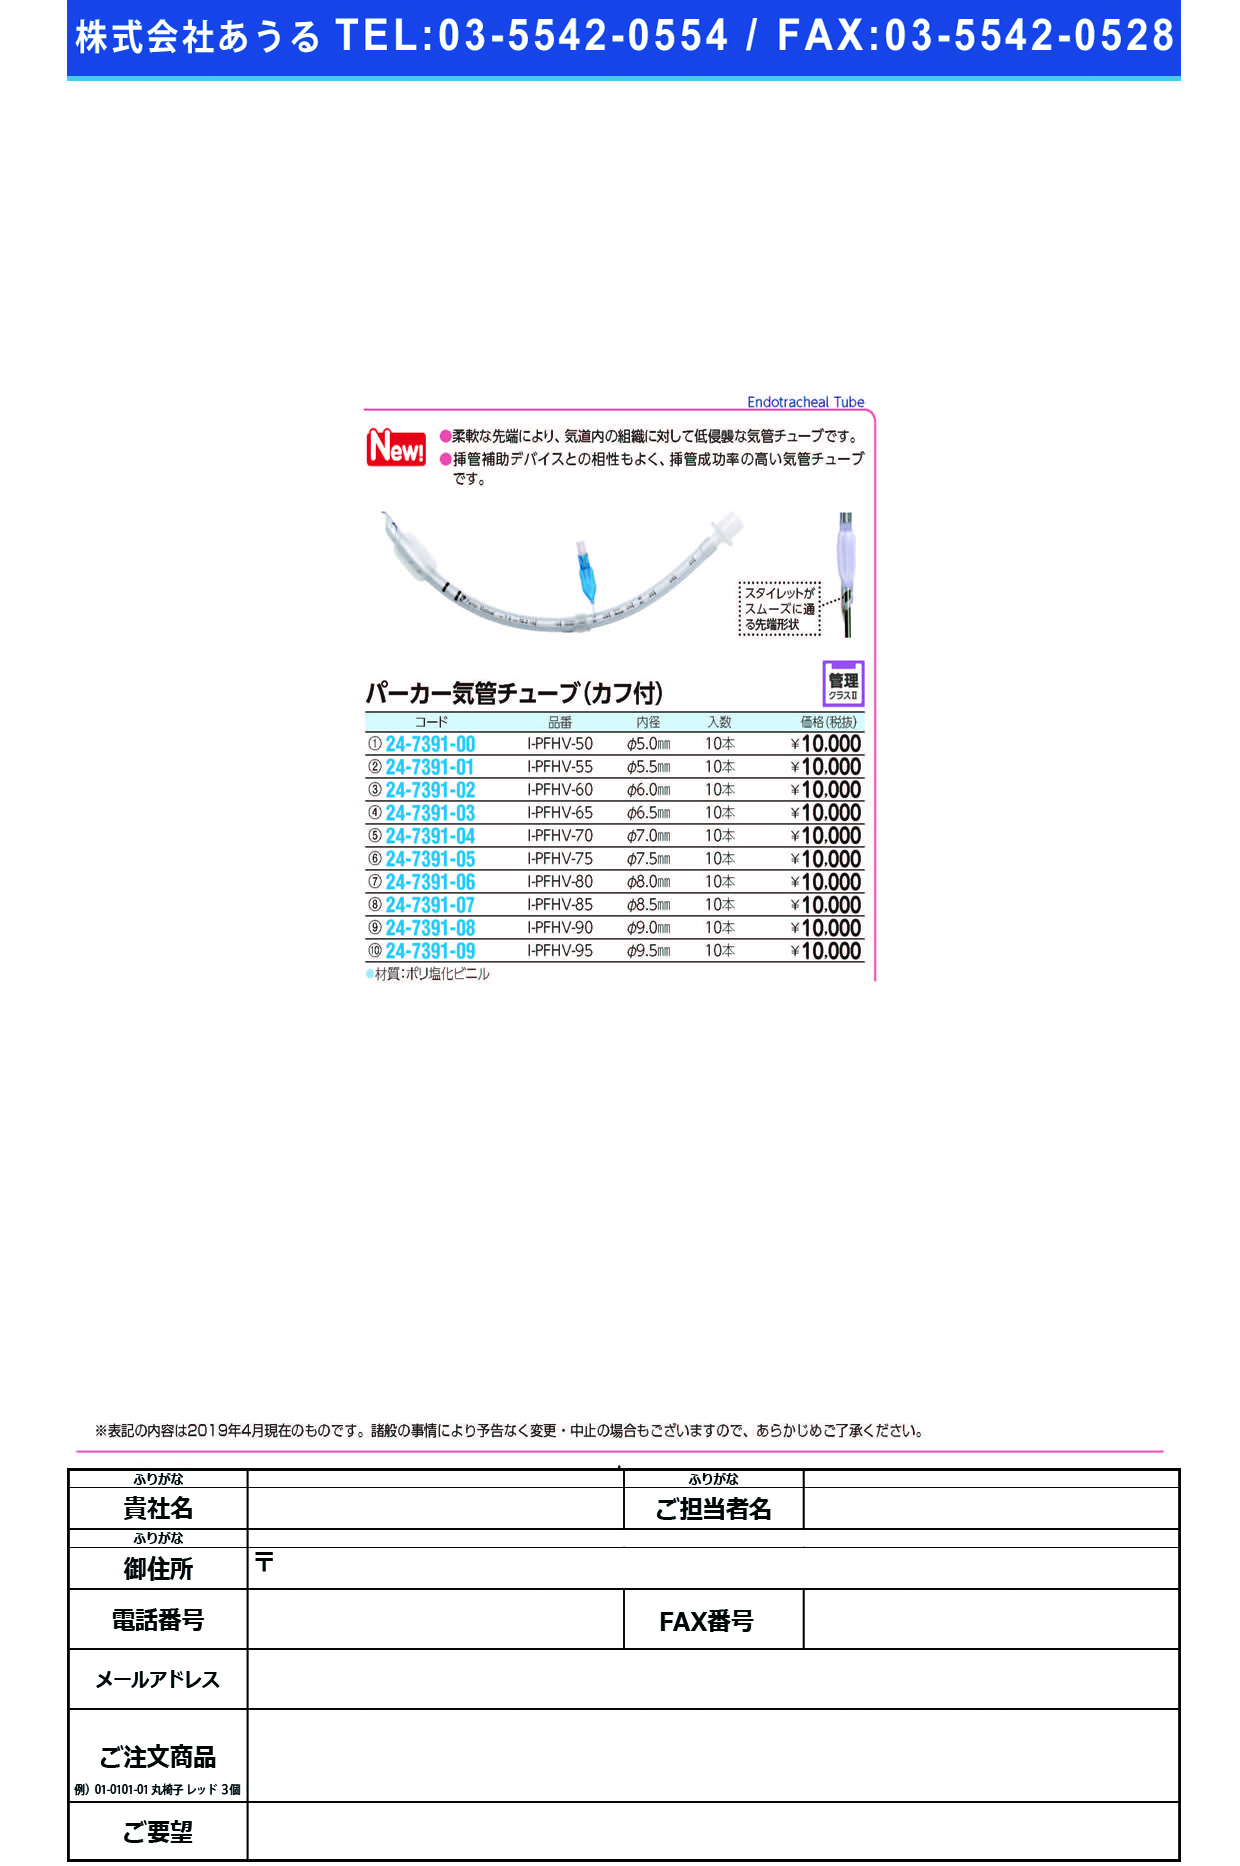 (24-7391-01)パーカー気管チューブI-PFHV-55(5.5MM)10ﾎﾝ ﾊﾟｰｶｰｷｶﾝﾁｭｰﾌﾞ(日本メディカルネクスト)【1箱単位】【2019年カタログ商品】